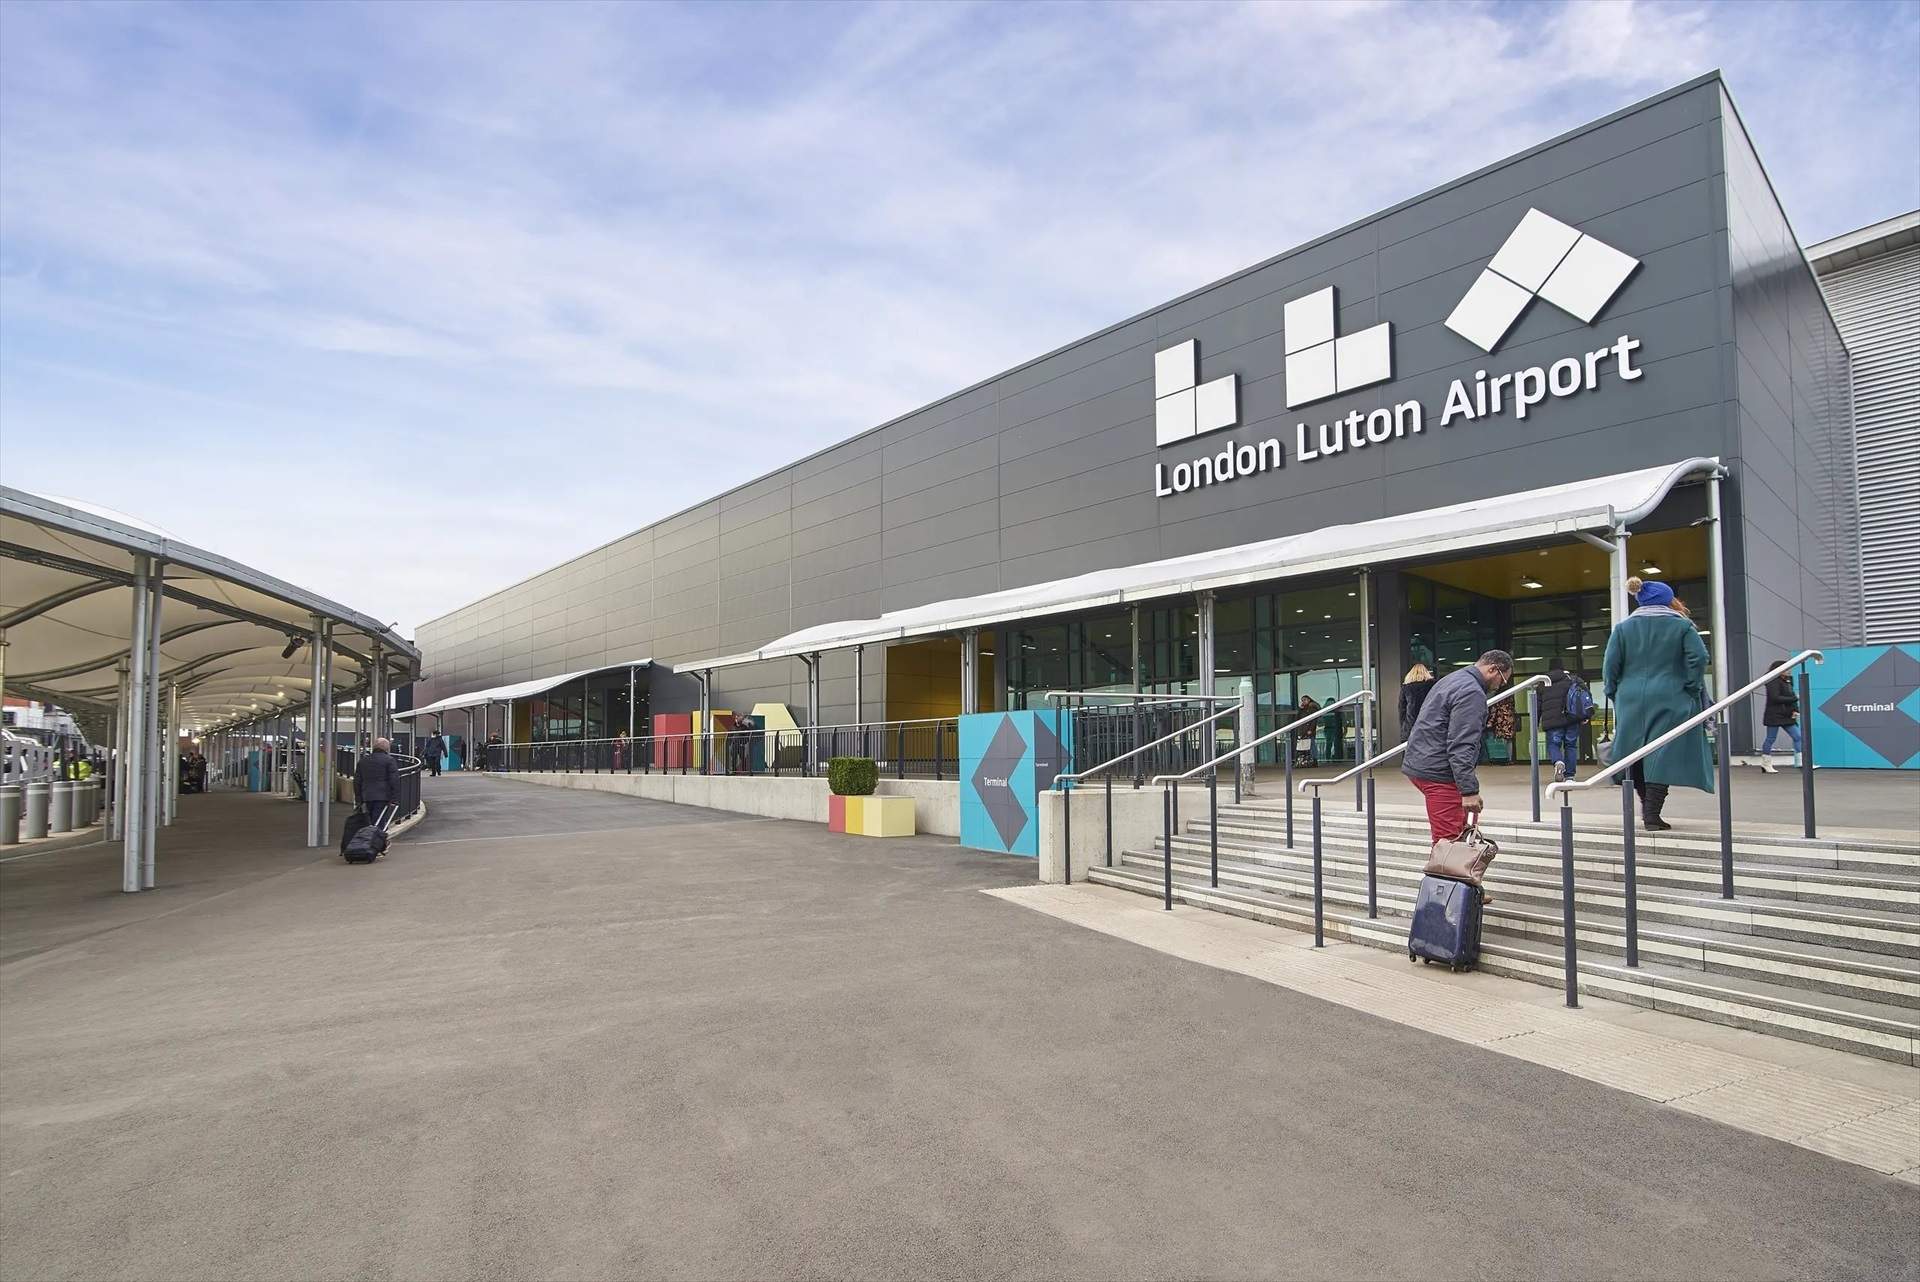 Embargan a Aena parte del aeropuerto de Luton por una medida de Rajoy contra empresas de renovables